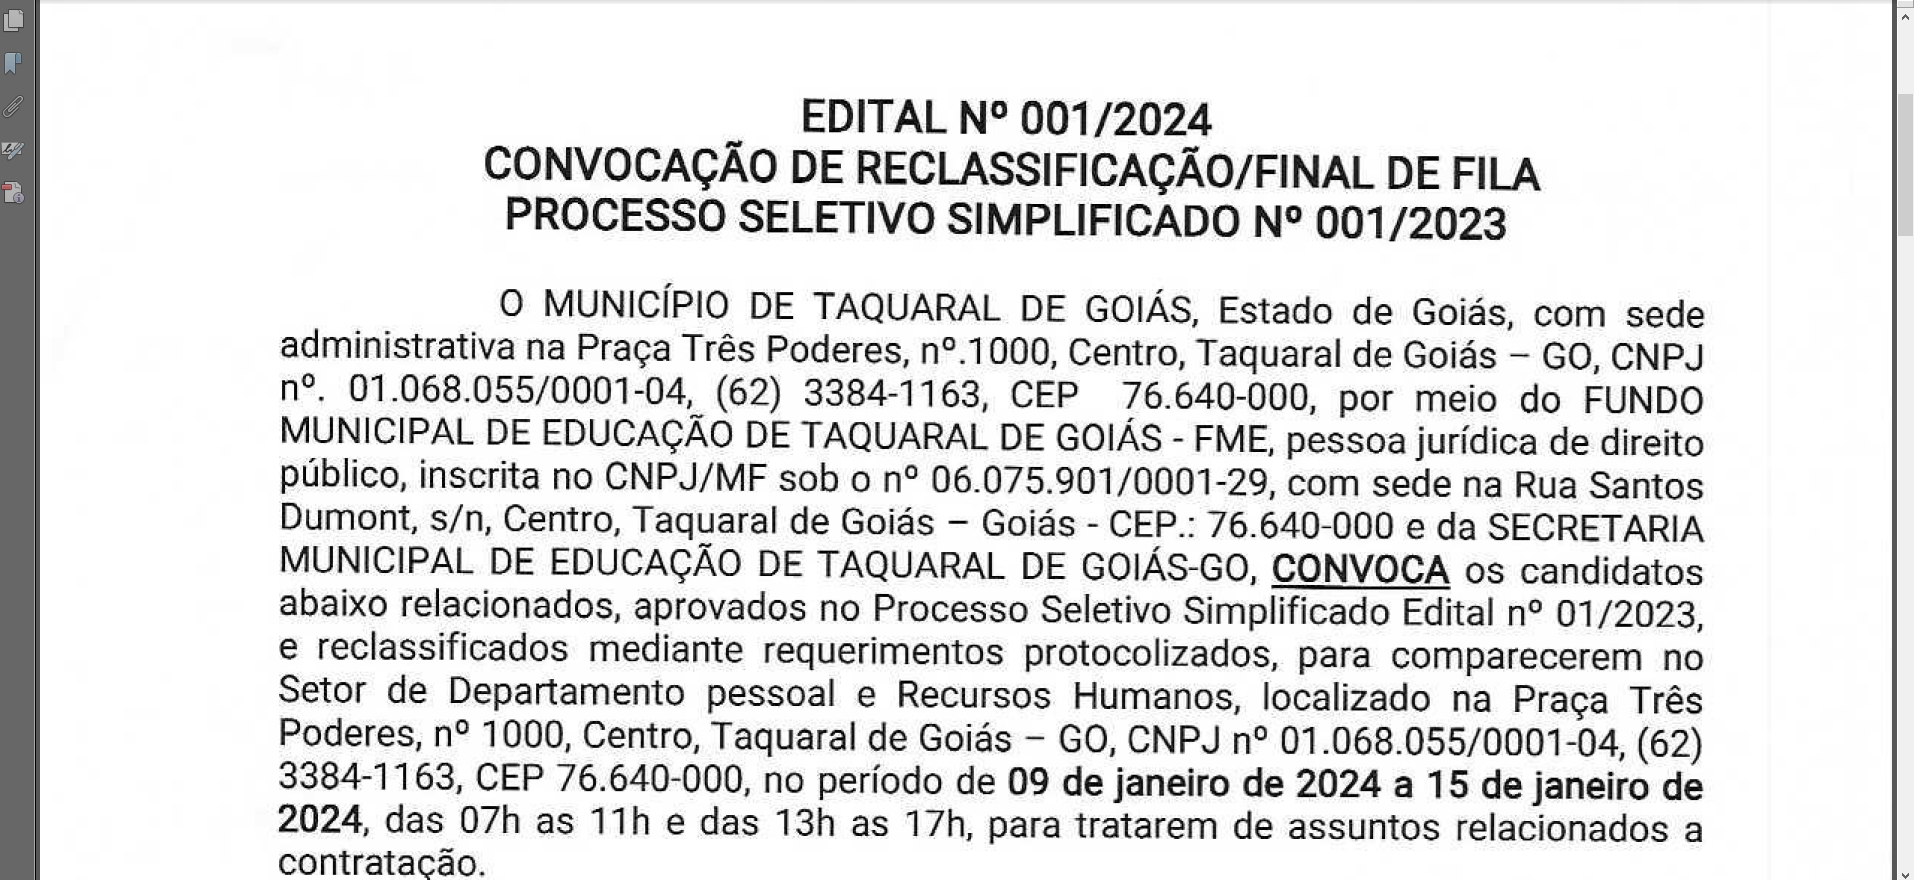 EDITAL Nº 001/2024CONVOCAÇÃO DE RECLASSIFICAÇÃO/FINAL DE FILAPROCESSO SELETIVO SIMPLIFICADO Nº 001/2023